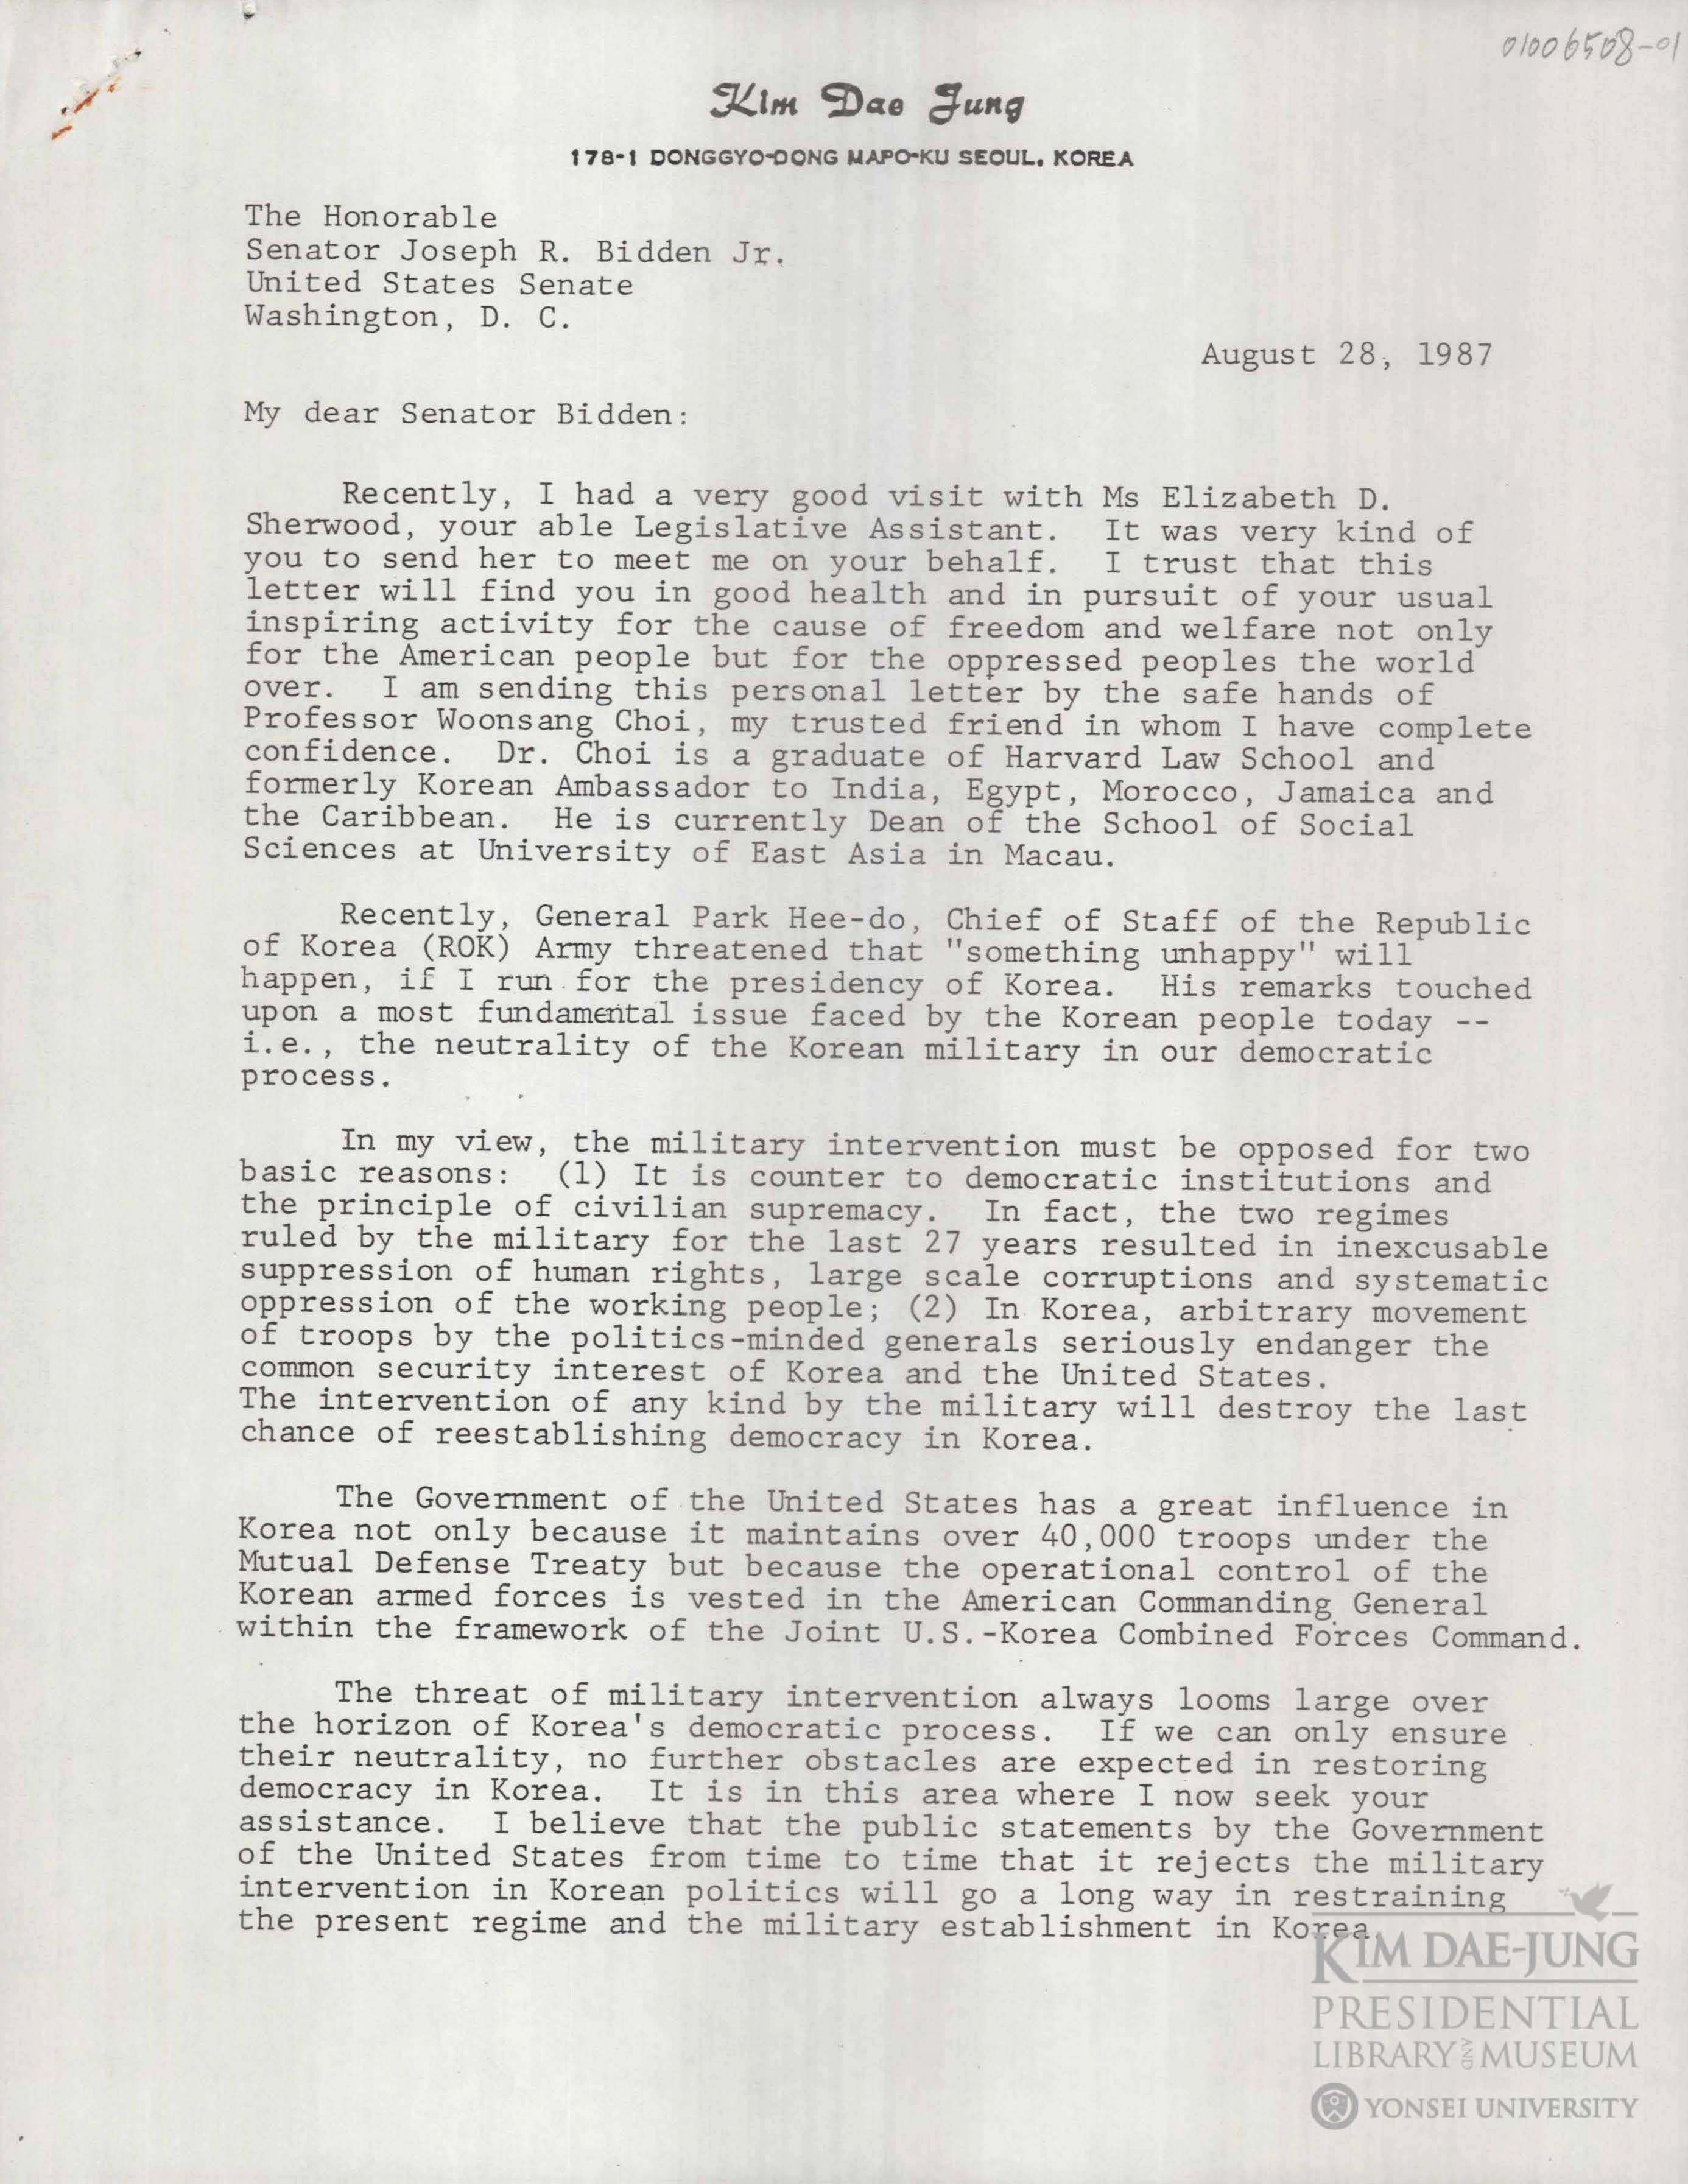 김대중 전 대통령이 바이든 미국 대통령에게 보낸 편지. 민주화추진협의회 공동의장이던 김 전 대통령은 1987년 8월 28일 바이든 당시 상원의원에게 편지를 보내 6월 민주항쟁 전후의 한국 정세를 알렸다. 연세대 김대중도서관 제공